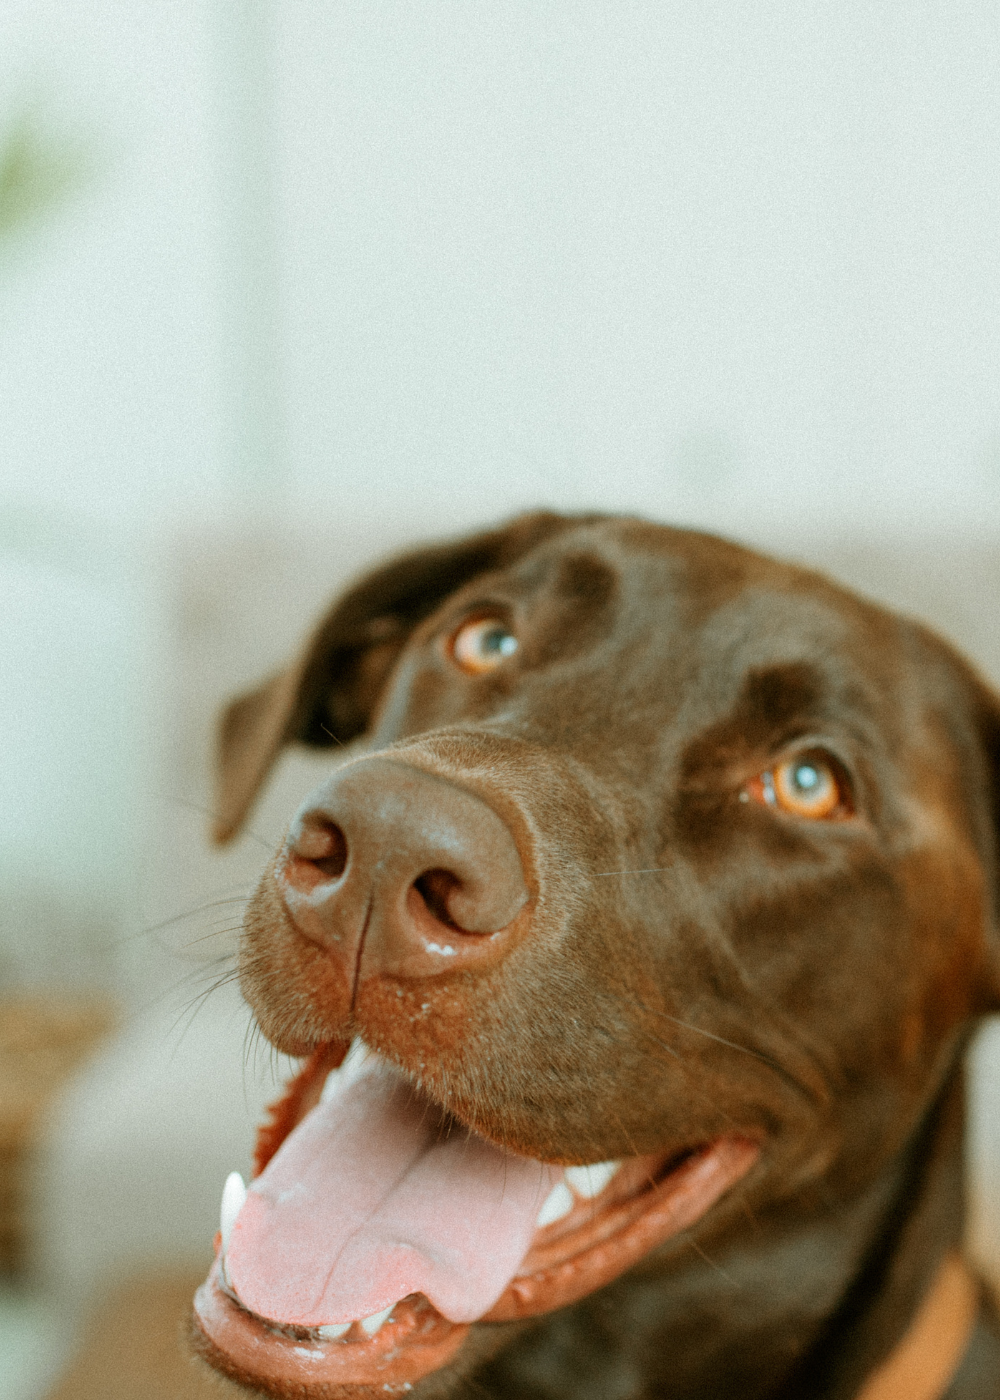 brown dog smiling